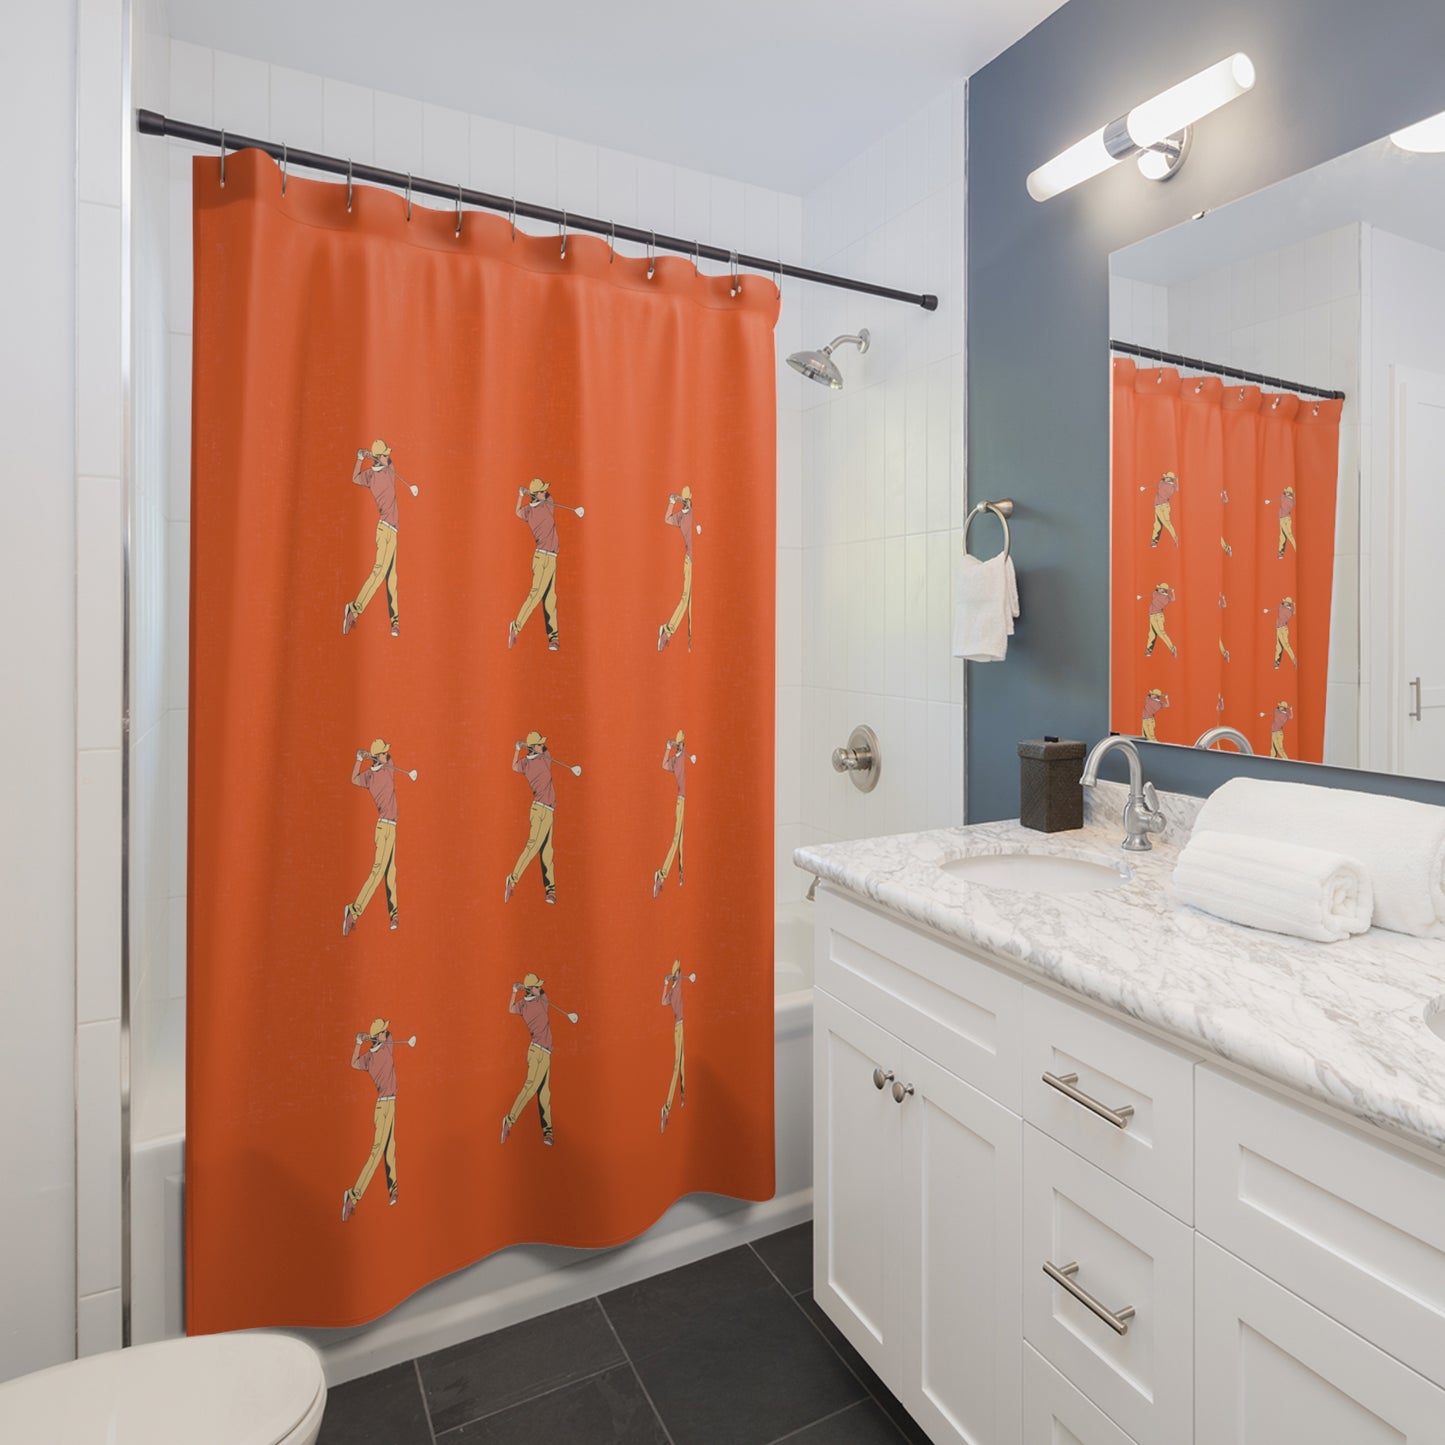 Shower Curtains: #2 Golf Orange